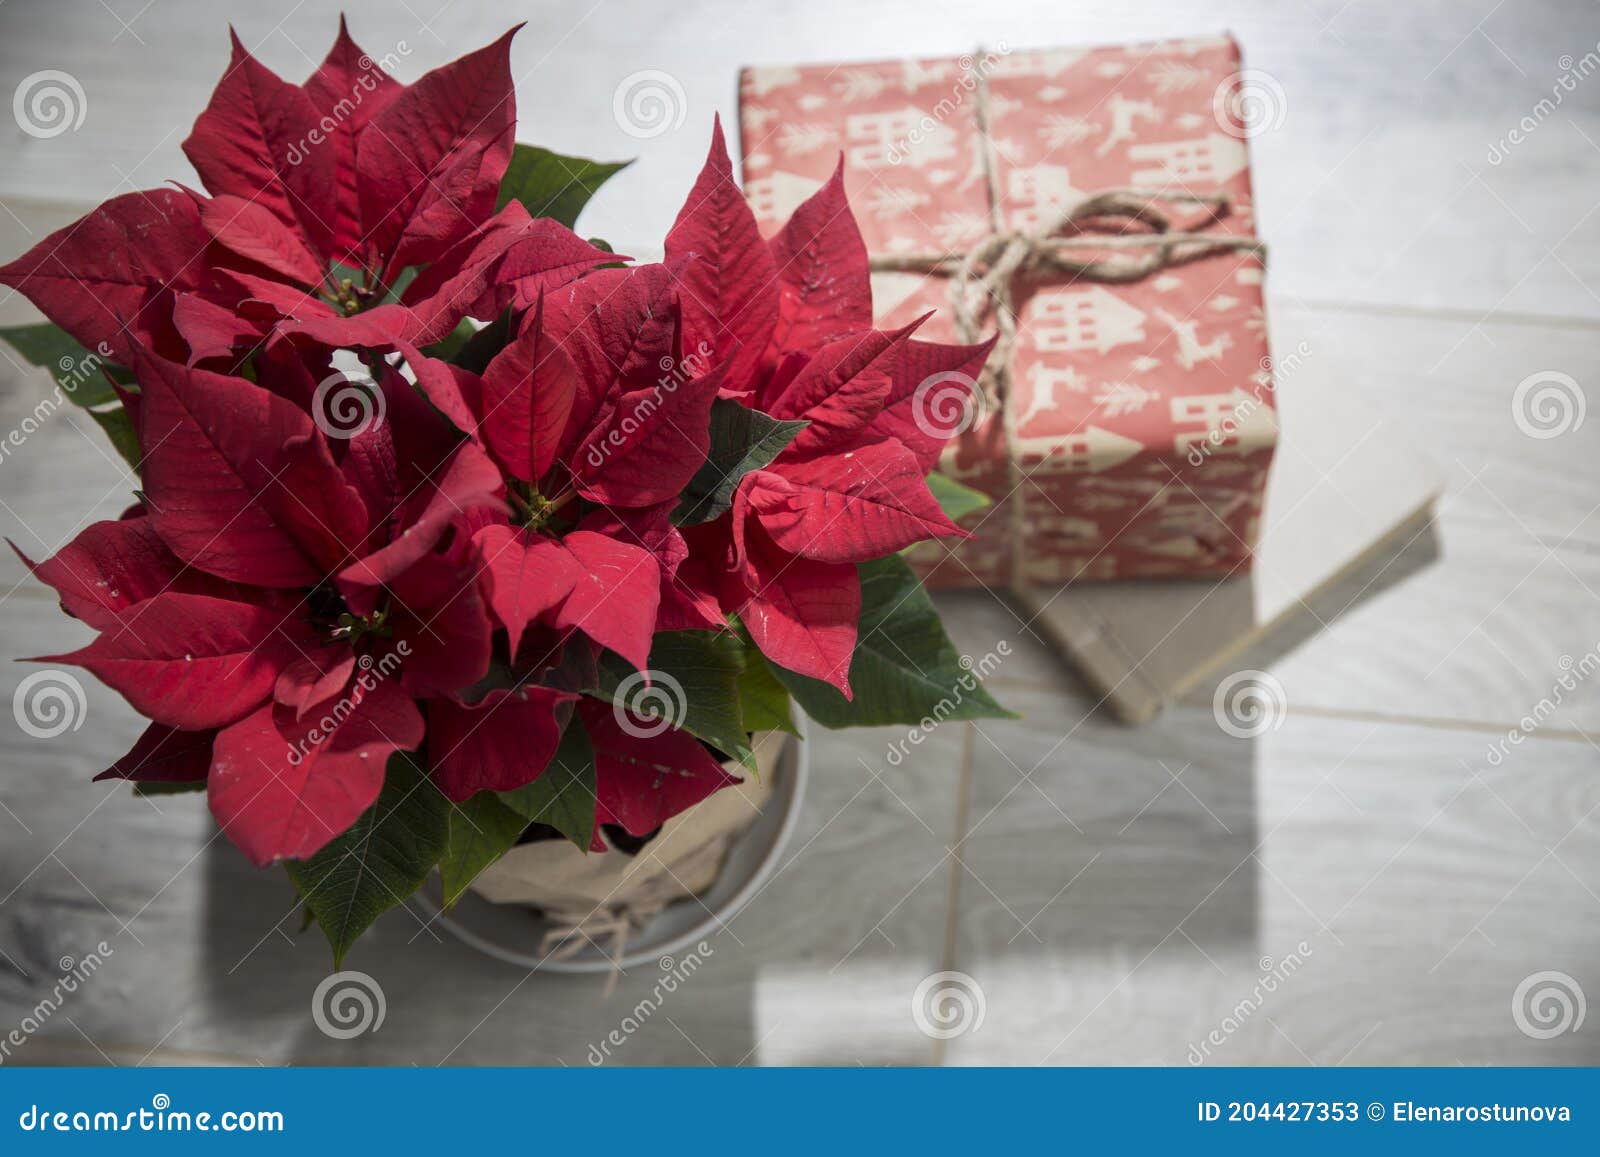 Estrela De Poinsettia De Flor De Natal E Caixas Com Presentes Para Natal Em  Uma Mesa De Madeira. Ver De Cima Imagem de Stock - Imagem de dezembro,  tradicional: 204427353